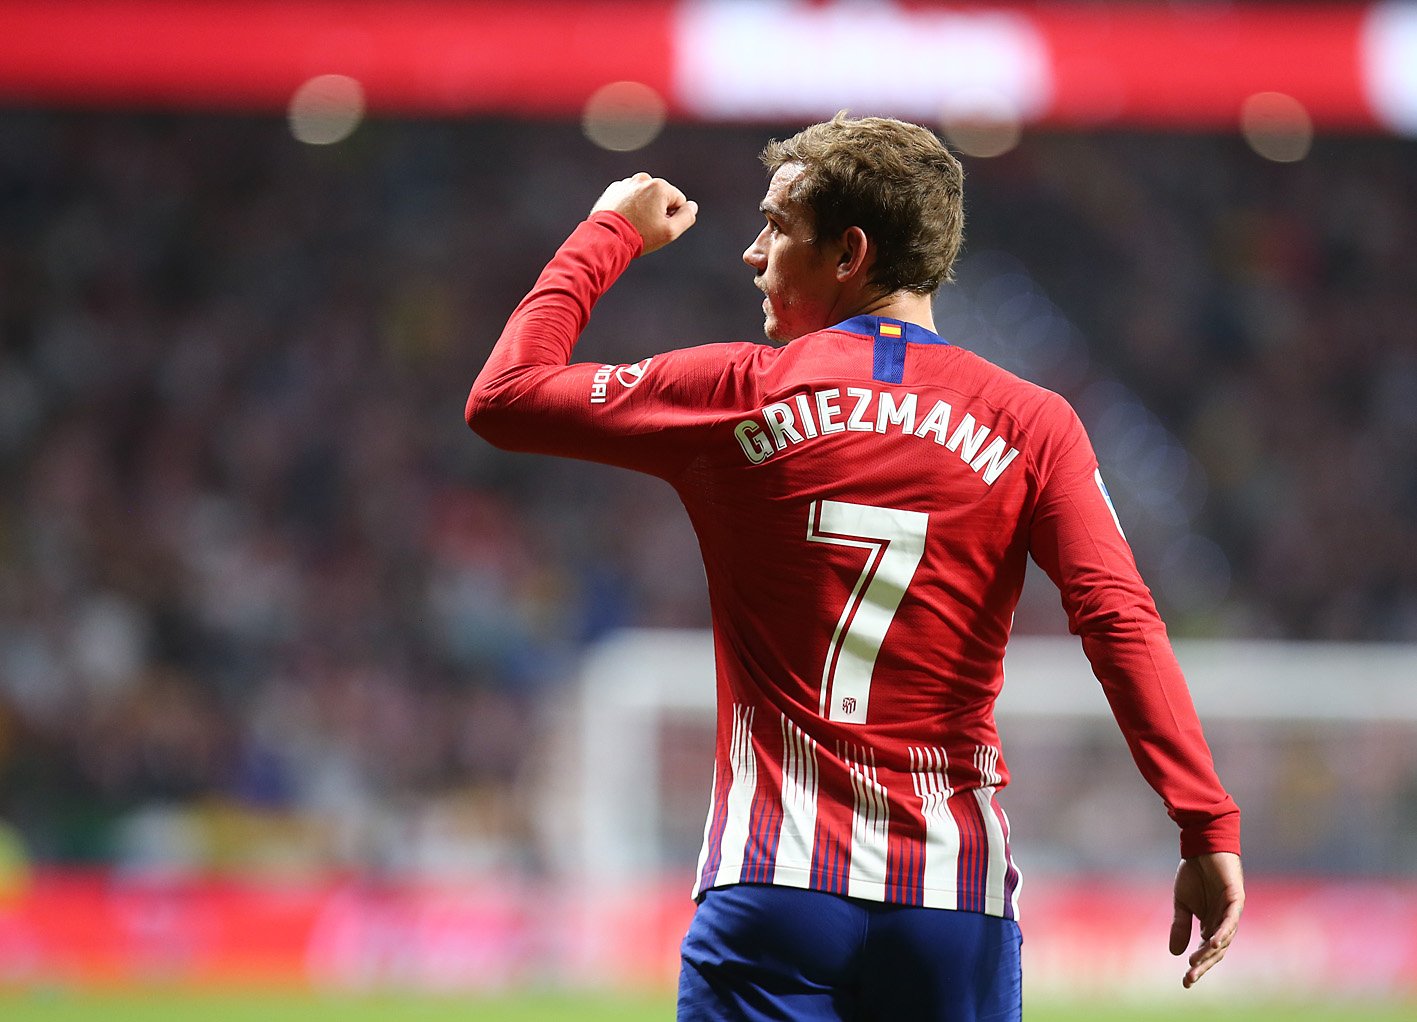 ESPANHOL: Com gol de Griezmann, Atlético de Madrid conquista primeira vitória